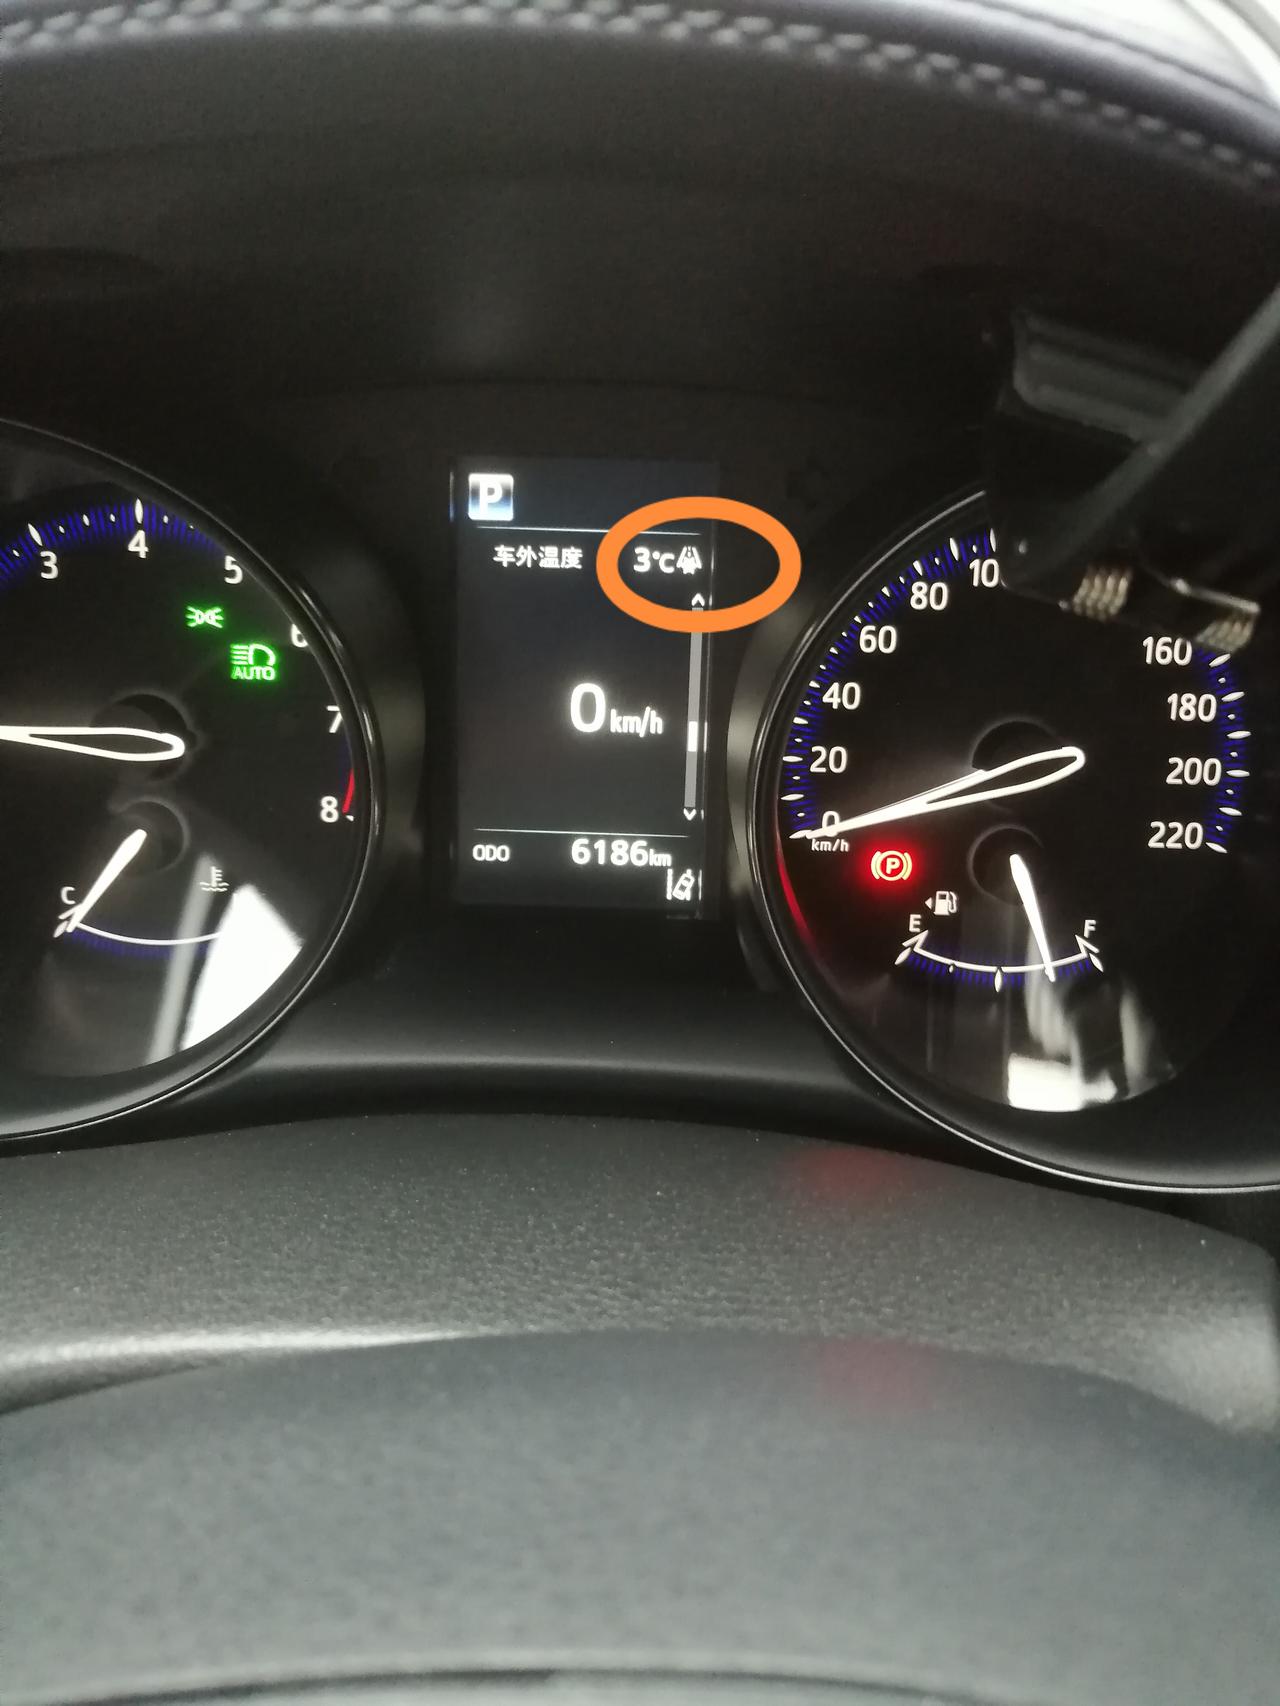 丰田C-HR 广汽丰田C一HR行车屏幕上标记圆⭕️是什么图标？是什么意思？